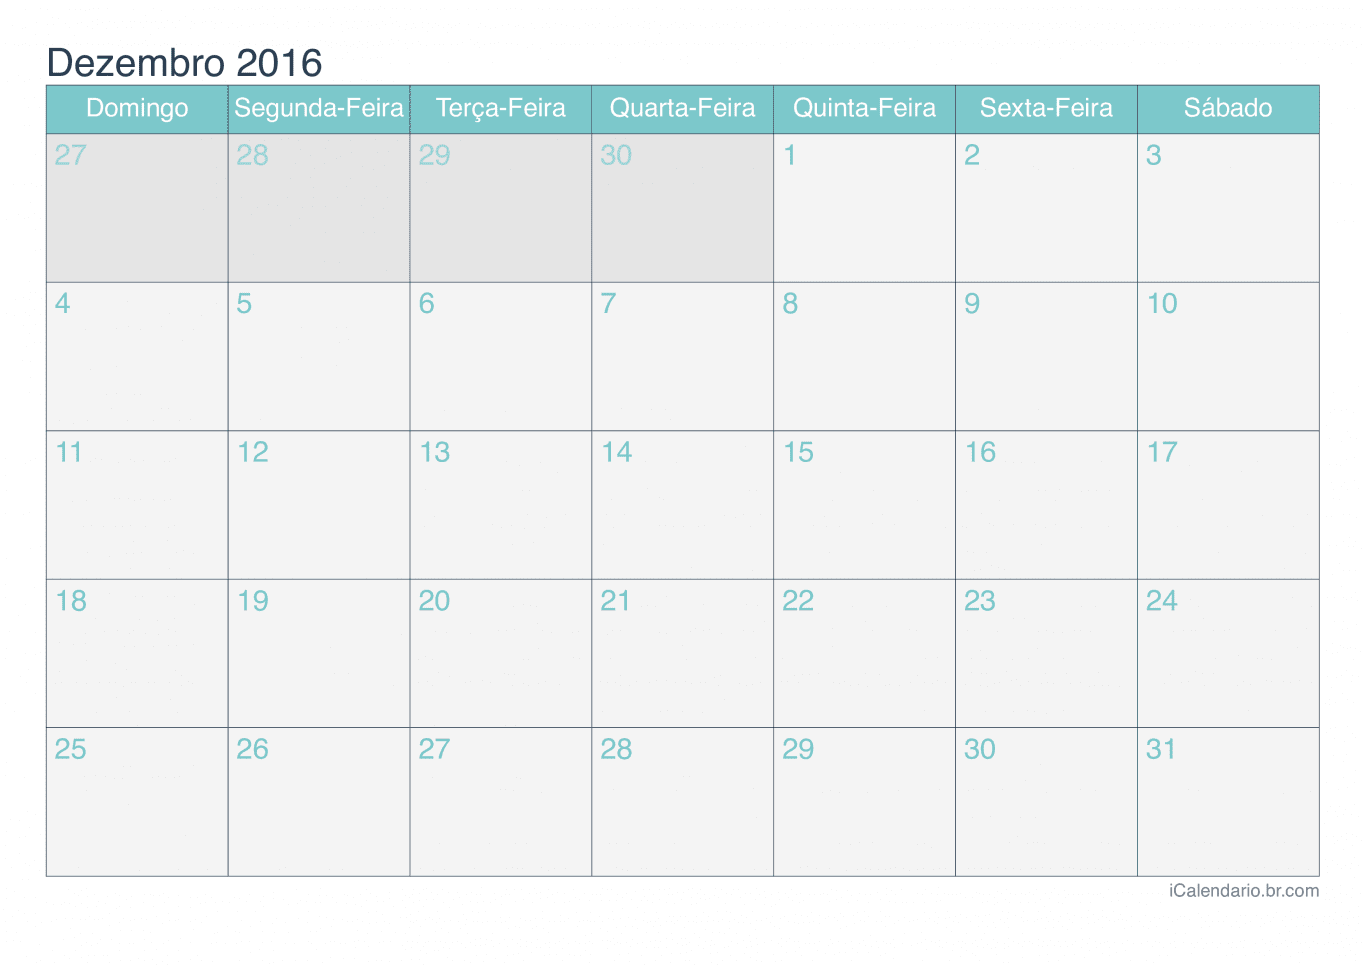 Calendário de dezembro 2016 - Turquesa